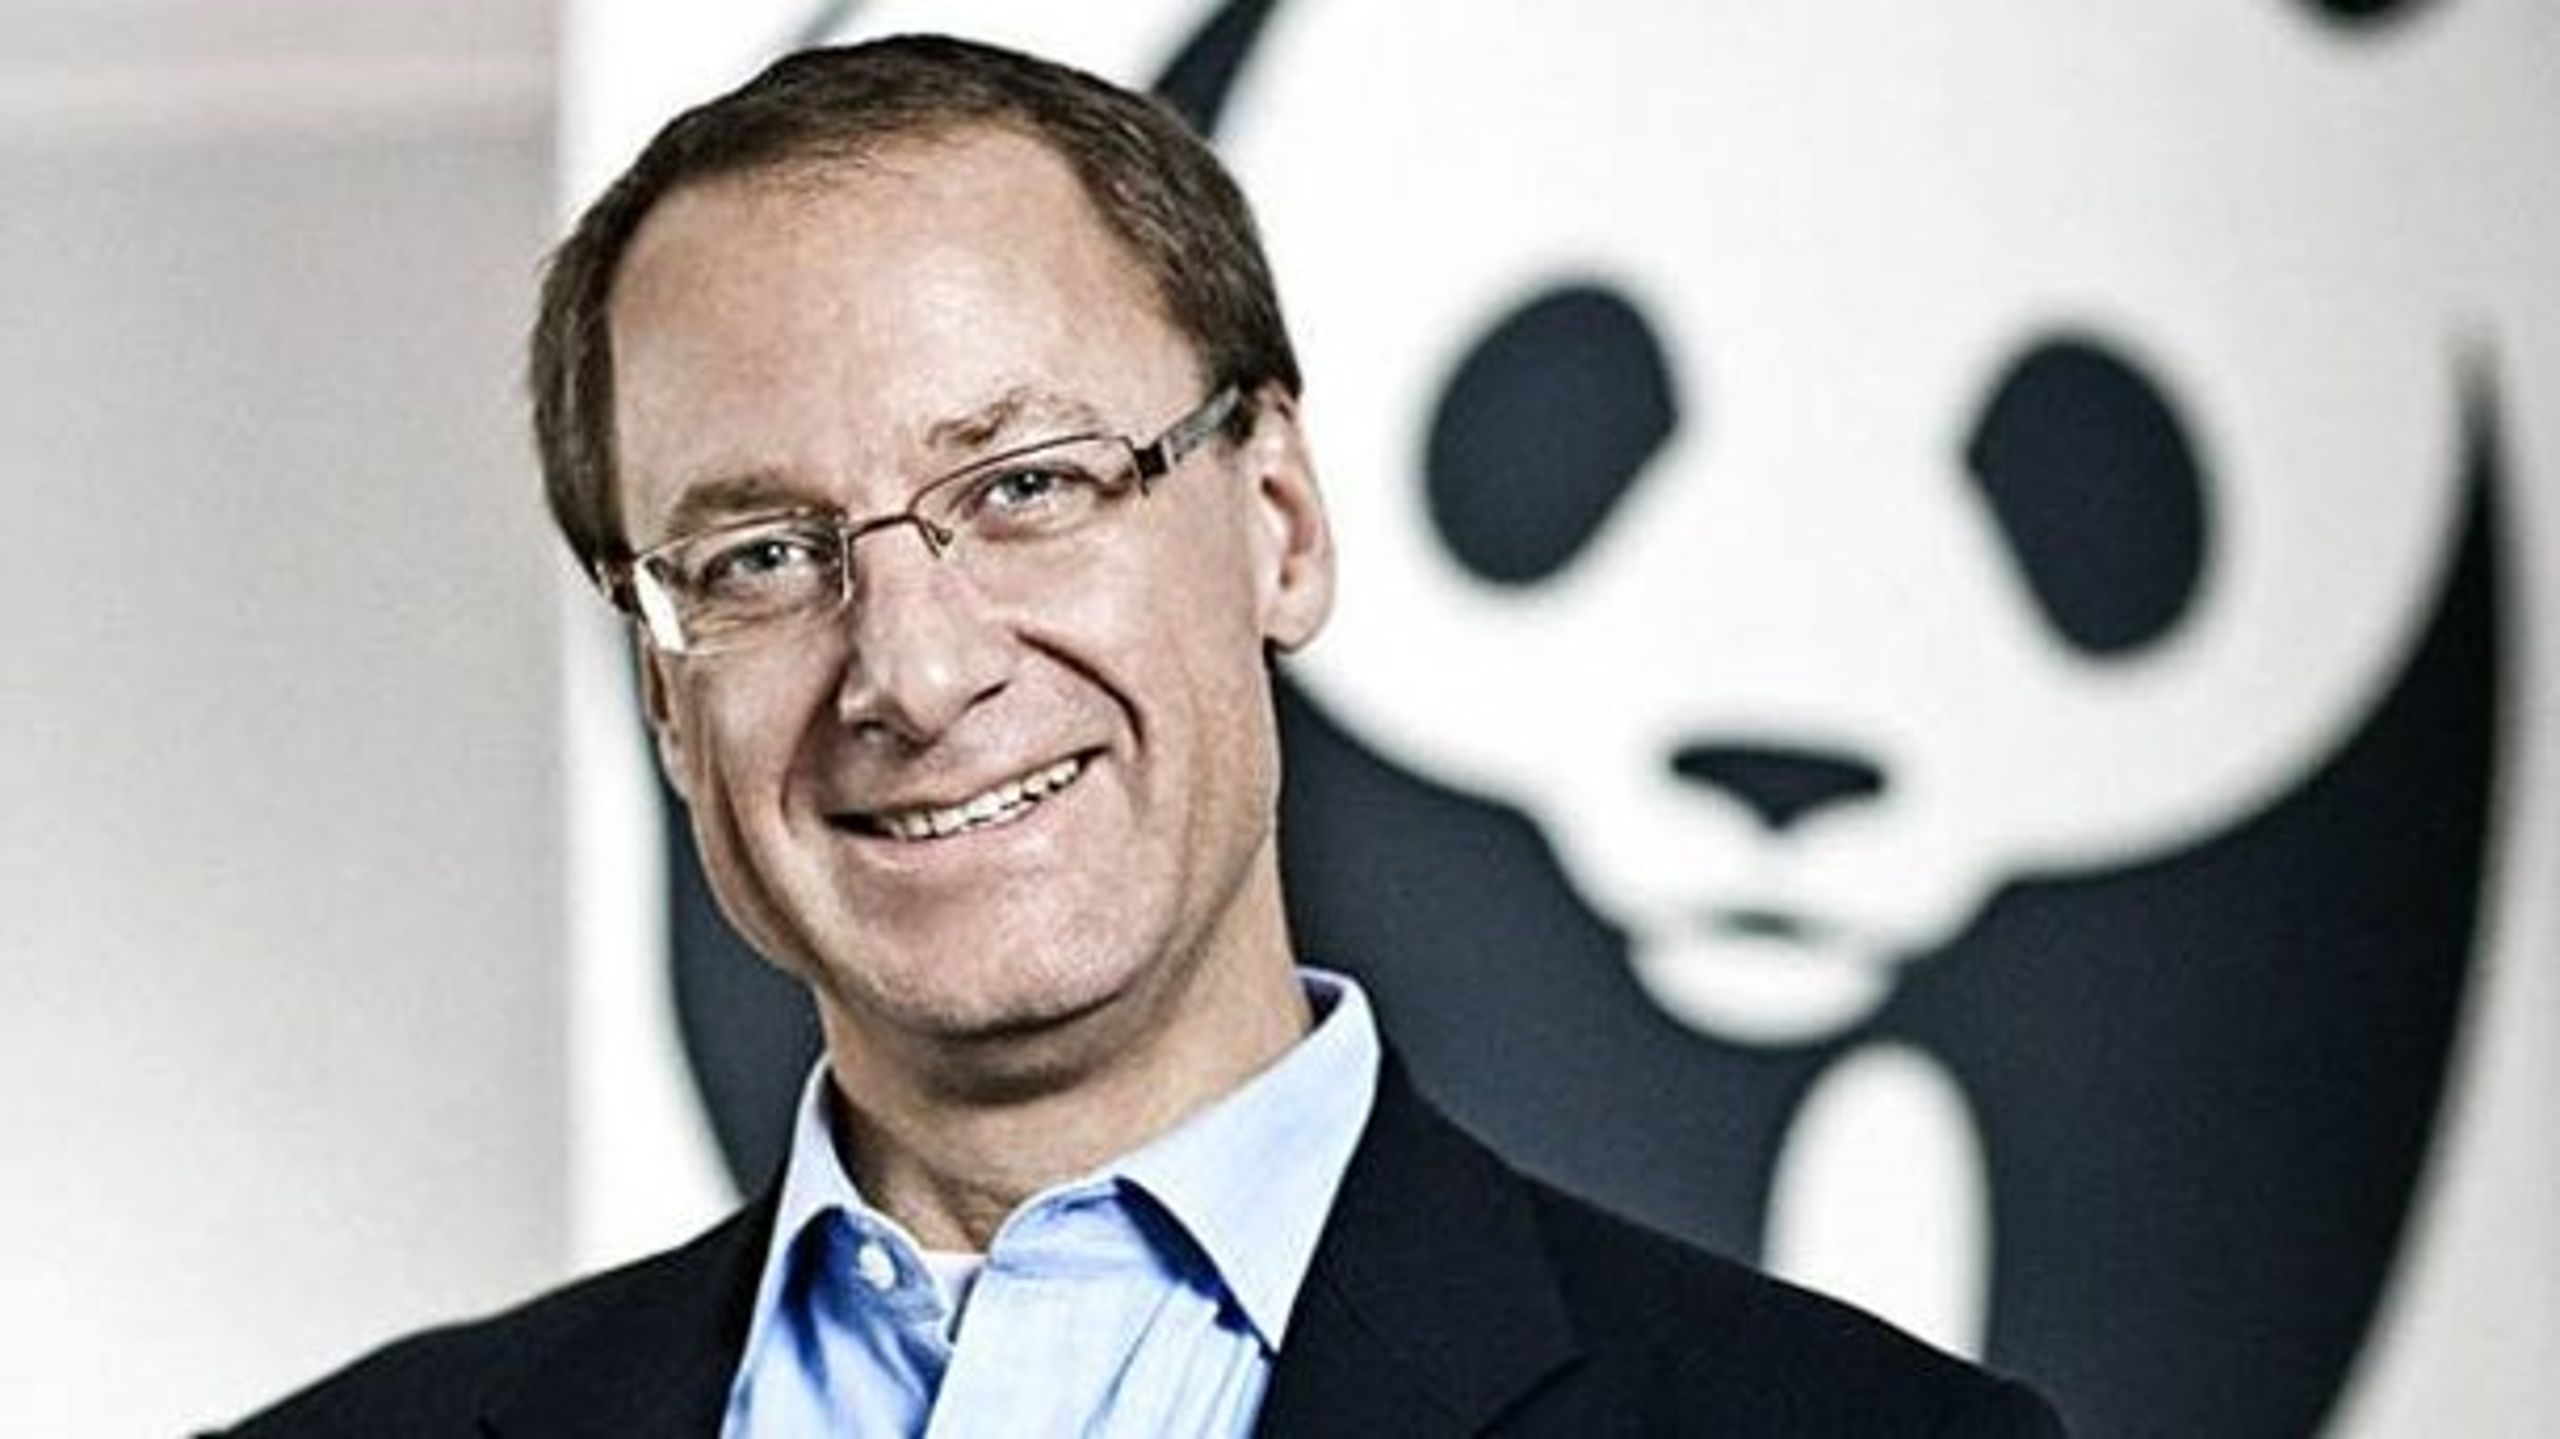 John Nordbo,&nbsp;født i&nbsp;1962 og uddannet cand.scient.pol., har været en flittig deltager i klimadebatten. Hans stilling bliver nu nedlagt, oplyser WWF Verdensnaturfonden.